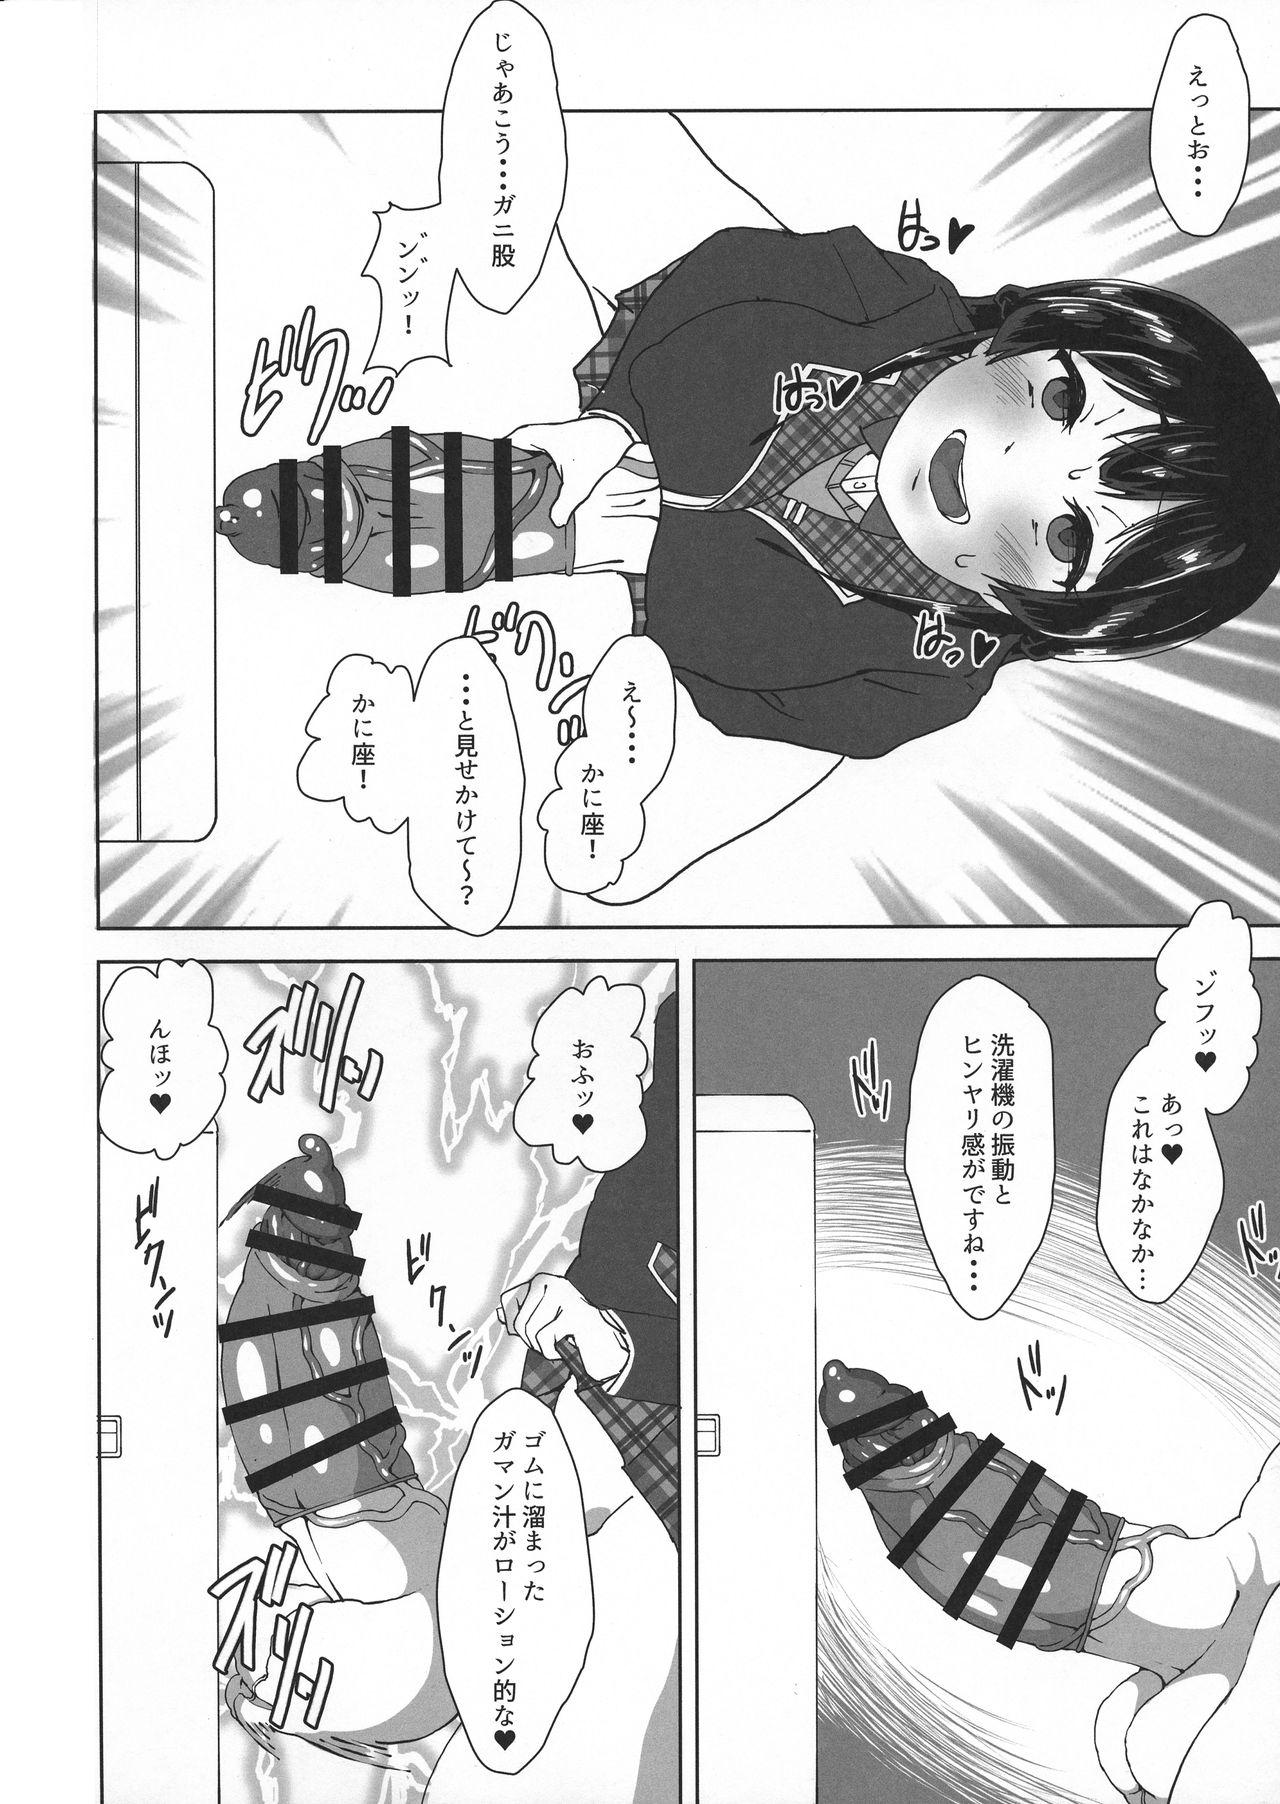 Teenager Watakushide Matomenakya Spy Camera - Page 8